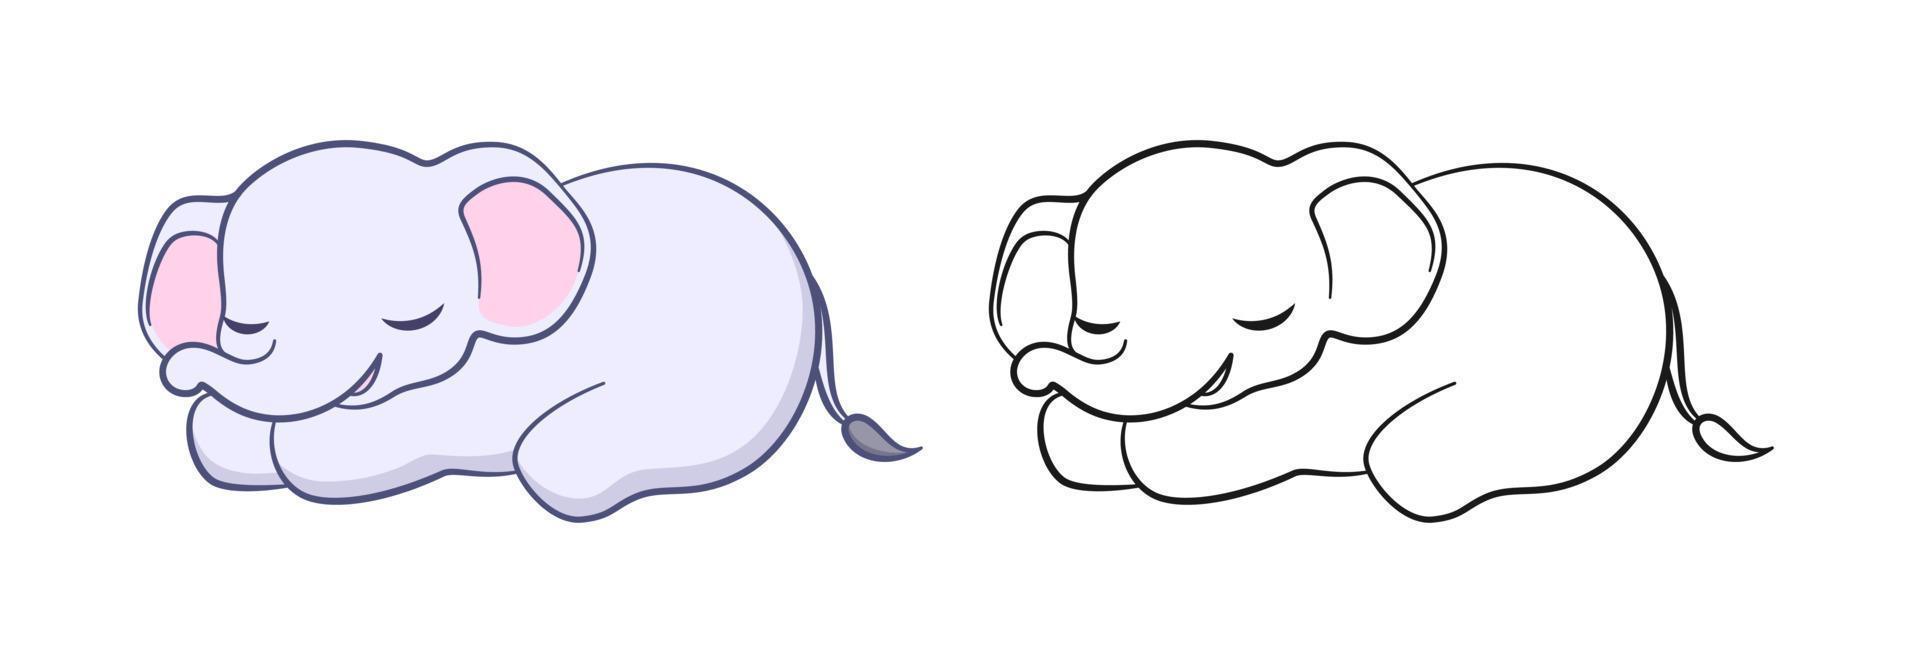 niedlicher schlafender baby-elefant-karikatur-entwurfs-illustrationssatz. Einfache Tier-Malbuchseiten-Aktivität für Kinder vektor